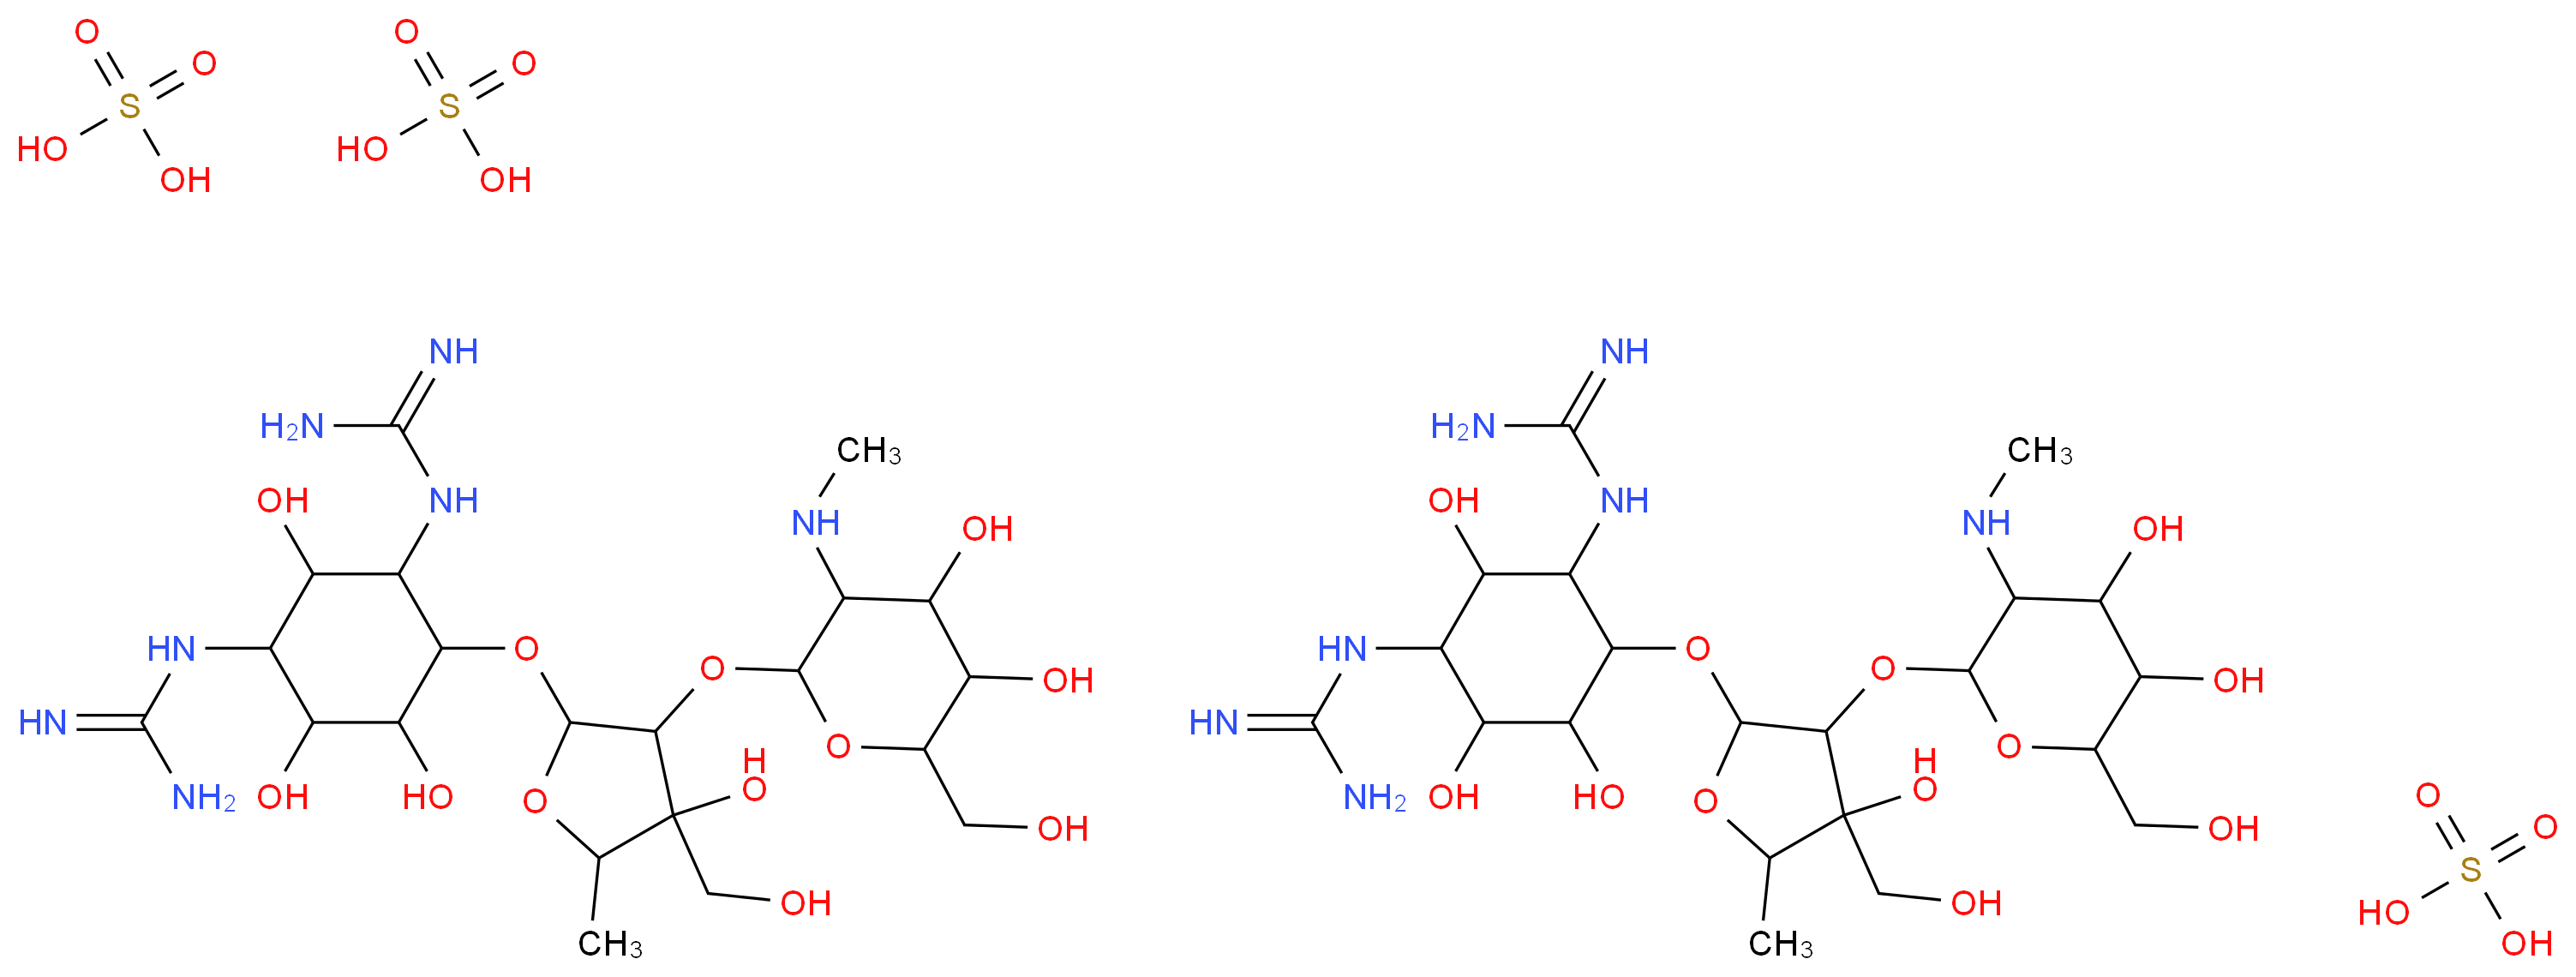 5490-27-7 molecular structure